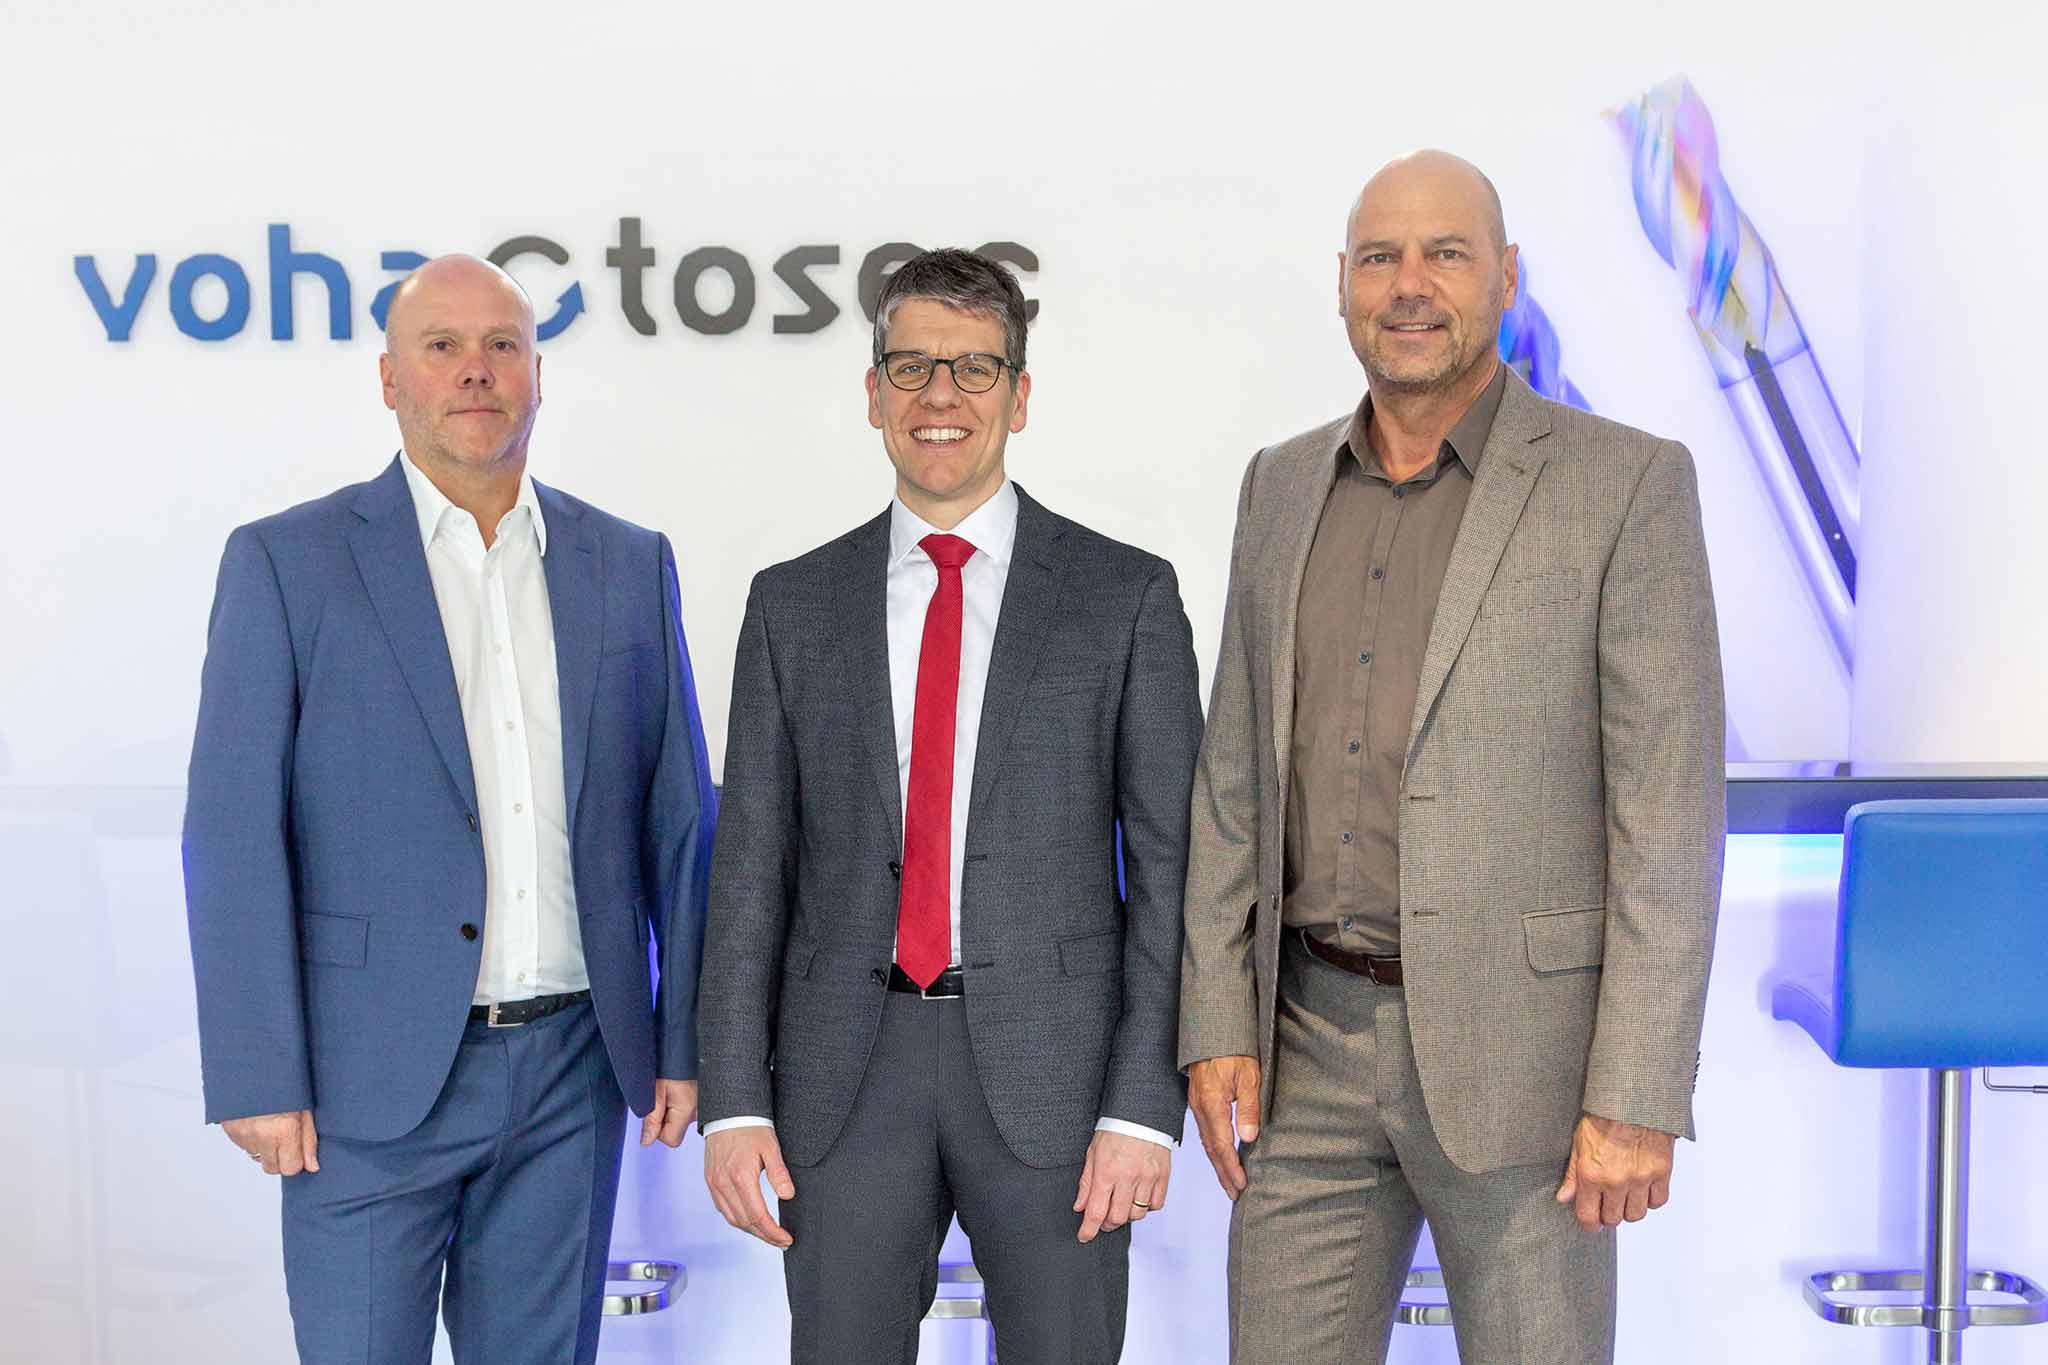 Vor dem voha-tosec Logo stehen Dieter Scheurer, Dr. Jochen Kress und Carsten Klein.